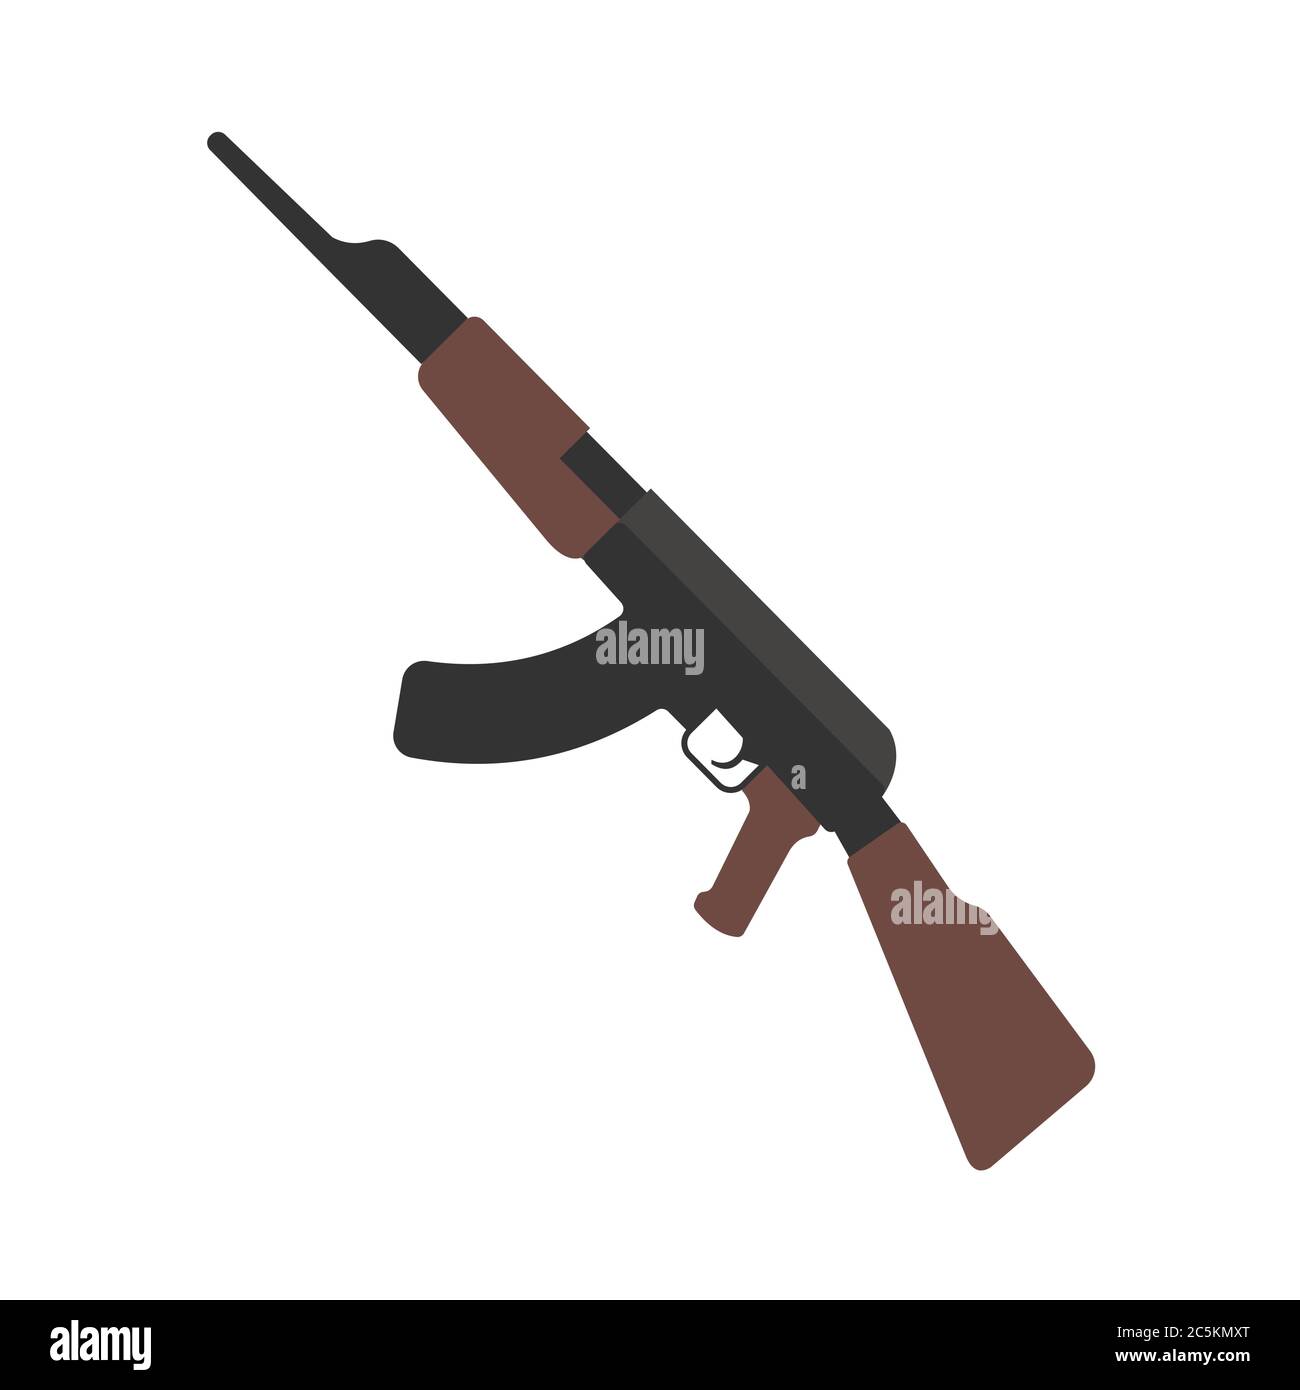 Kalashnikov assault rifle on white background. EPS 10.  Stock Vector